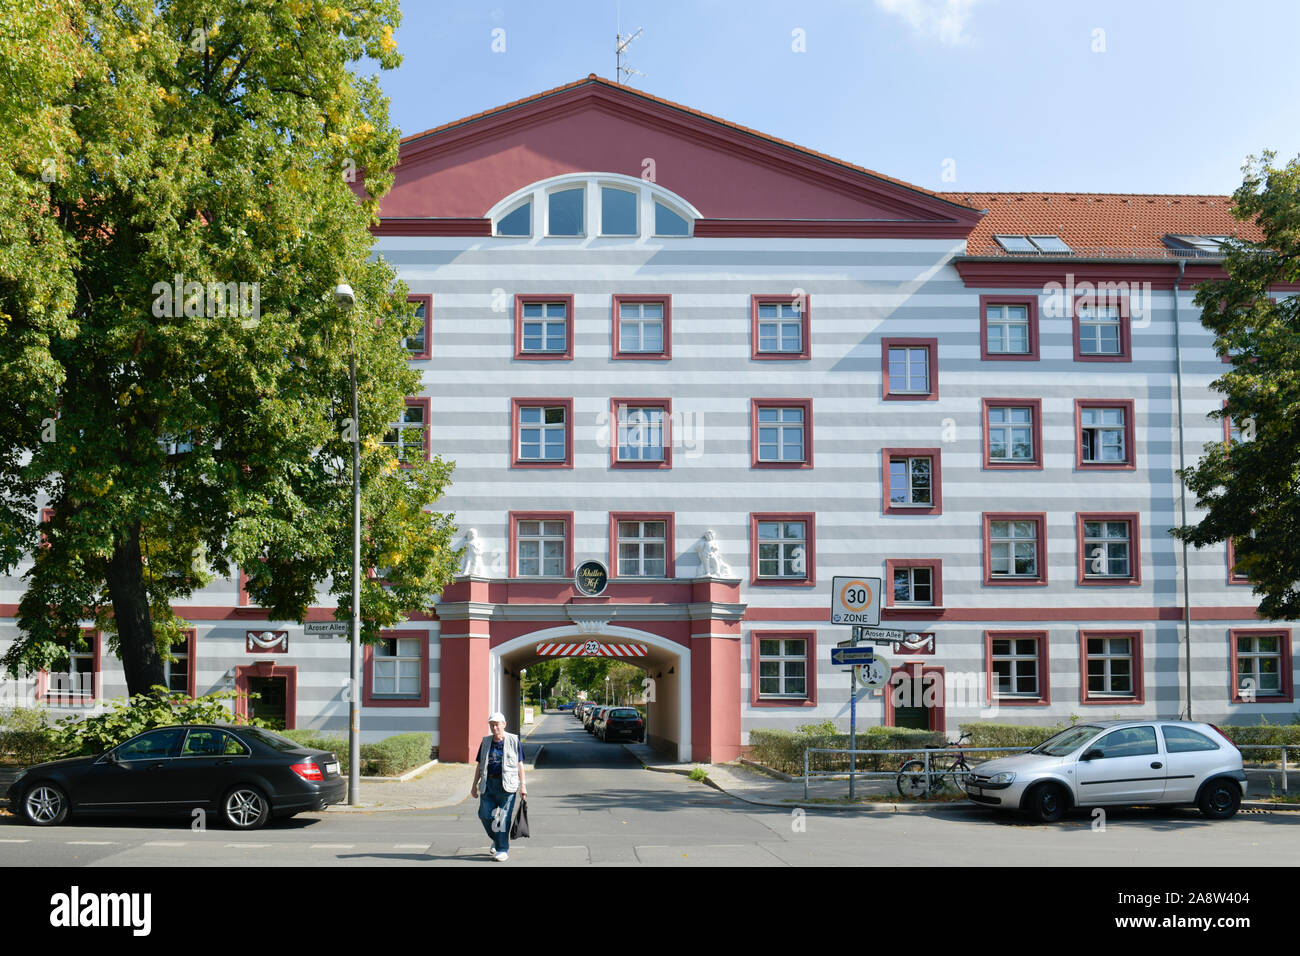 Wohnanlage Schillerhof, Aroser Allee, Reinickendorf, Berlin, Deutschland Stock Photo